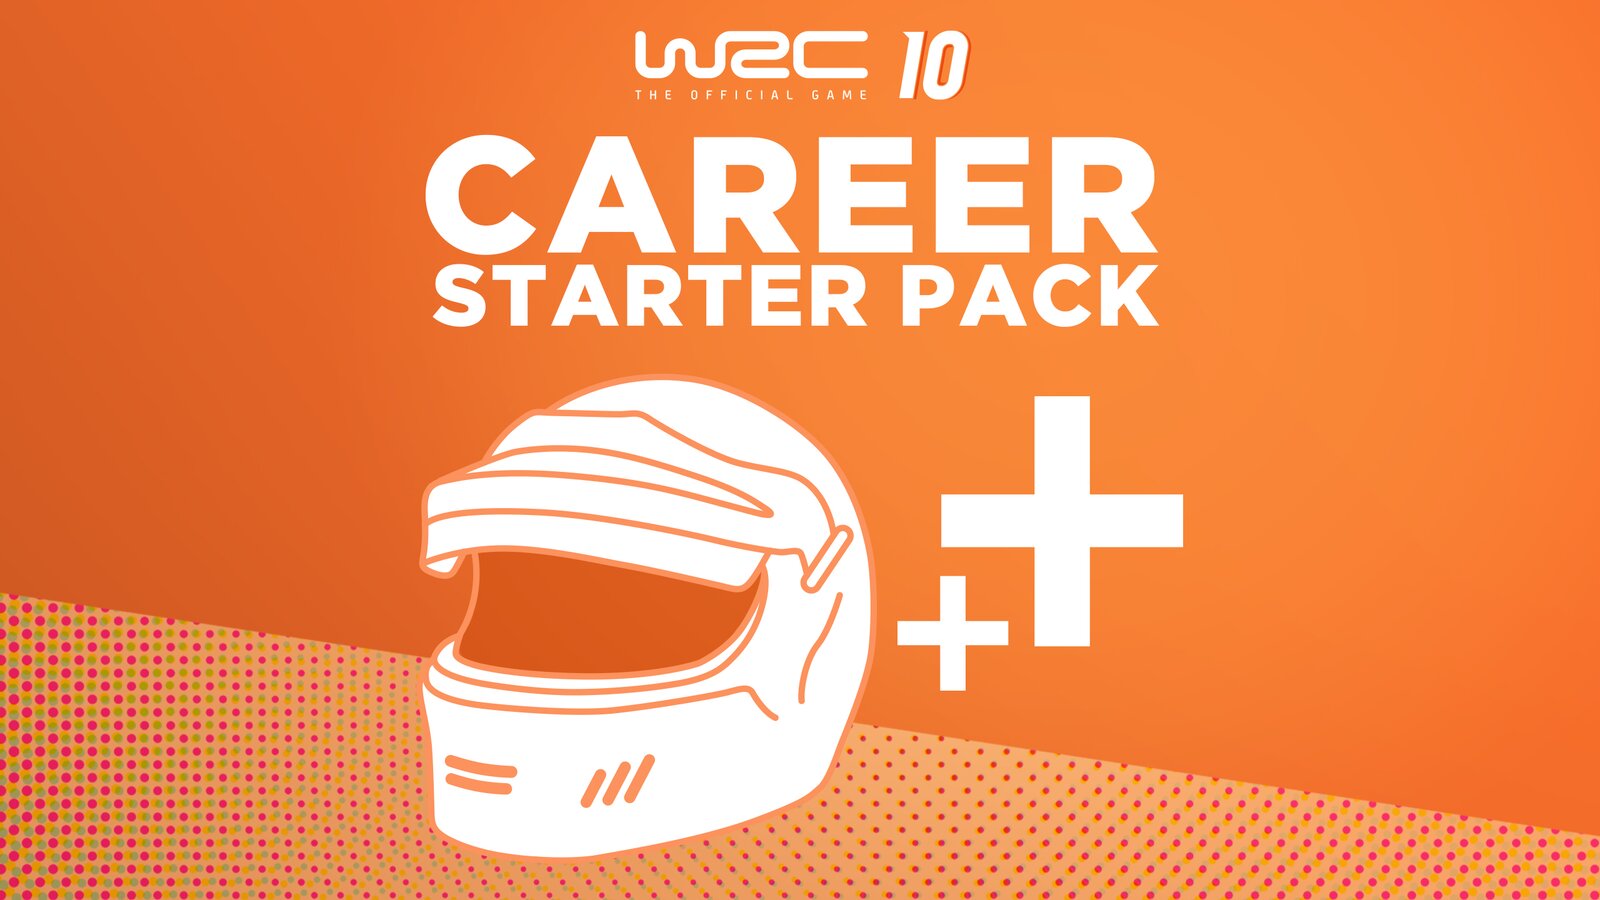 WRC 10 - Career Starter Pack